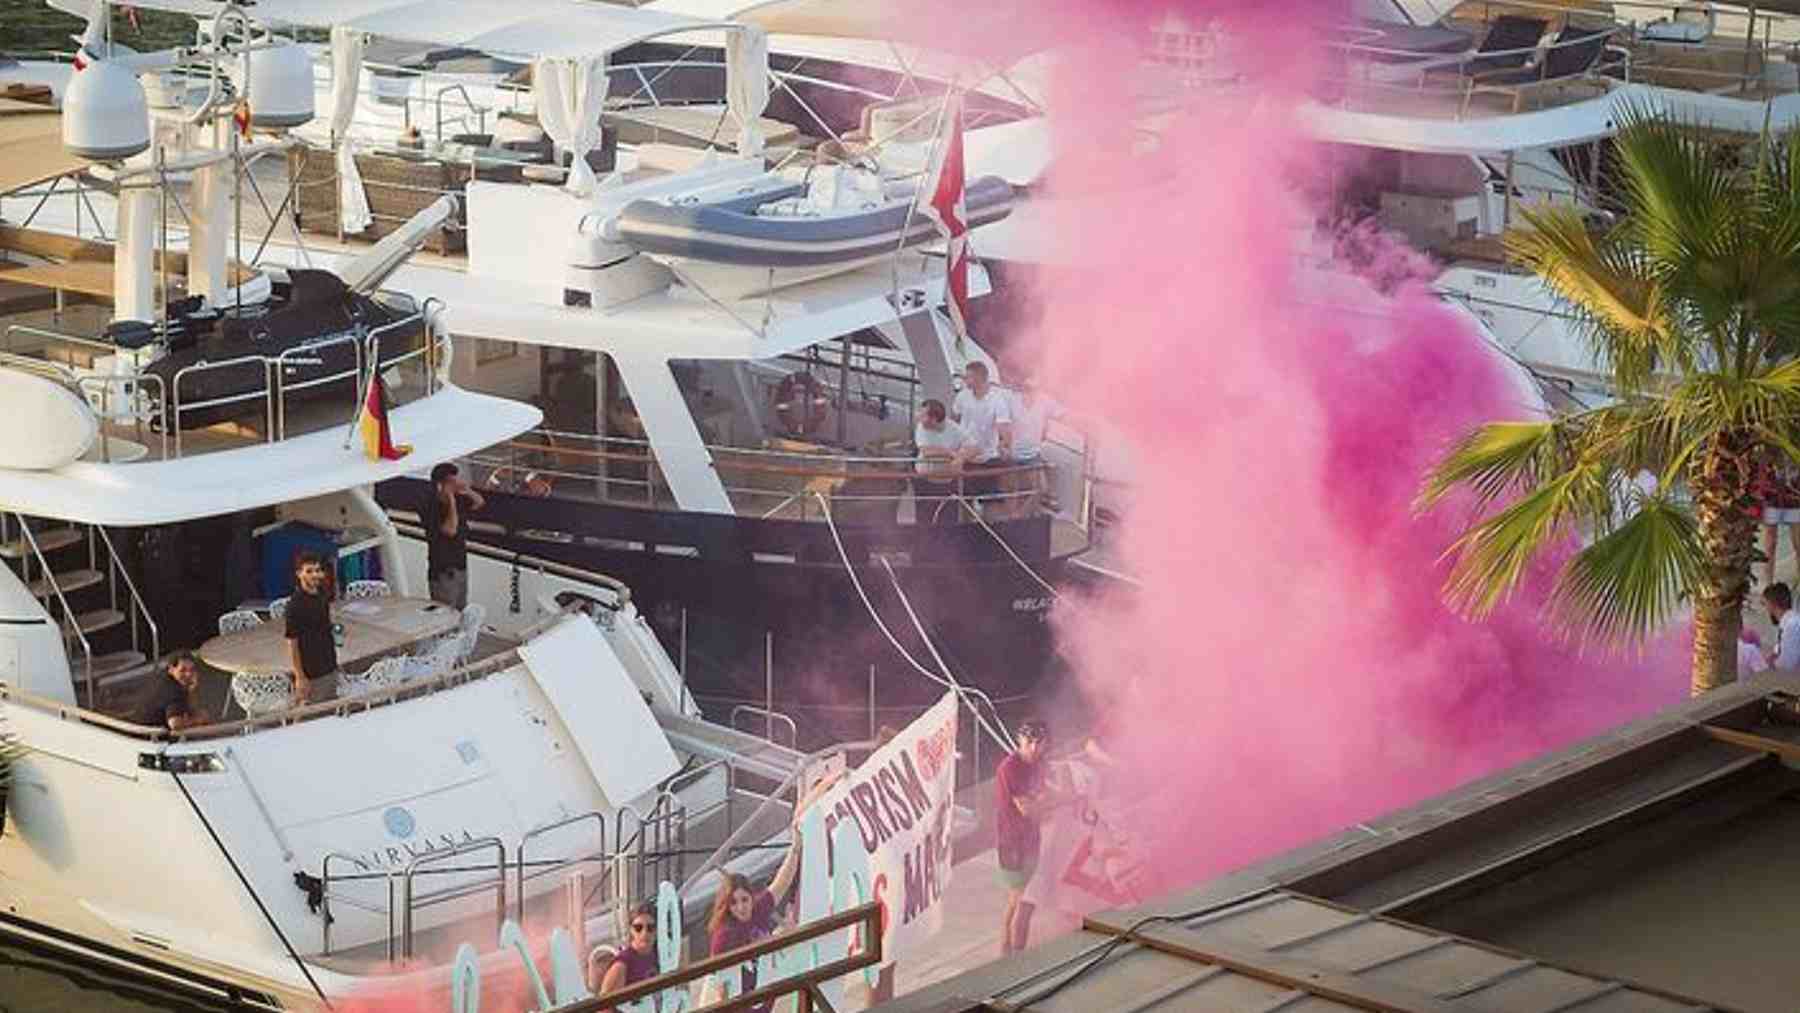 Imagen del acto vandálico de Arran en el puerto de Palma en 2017. ARRAN